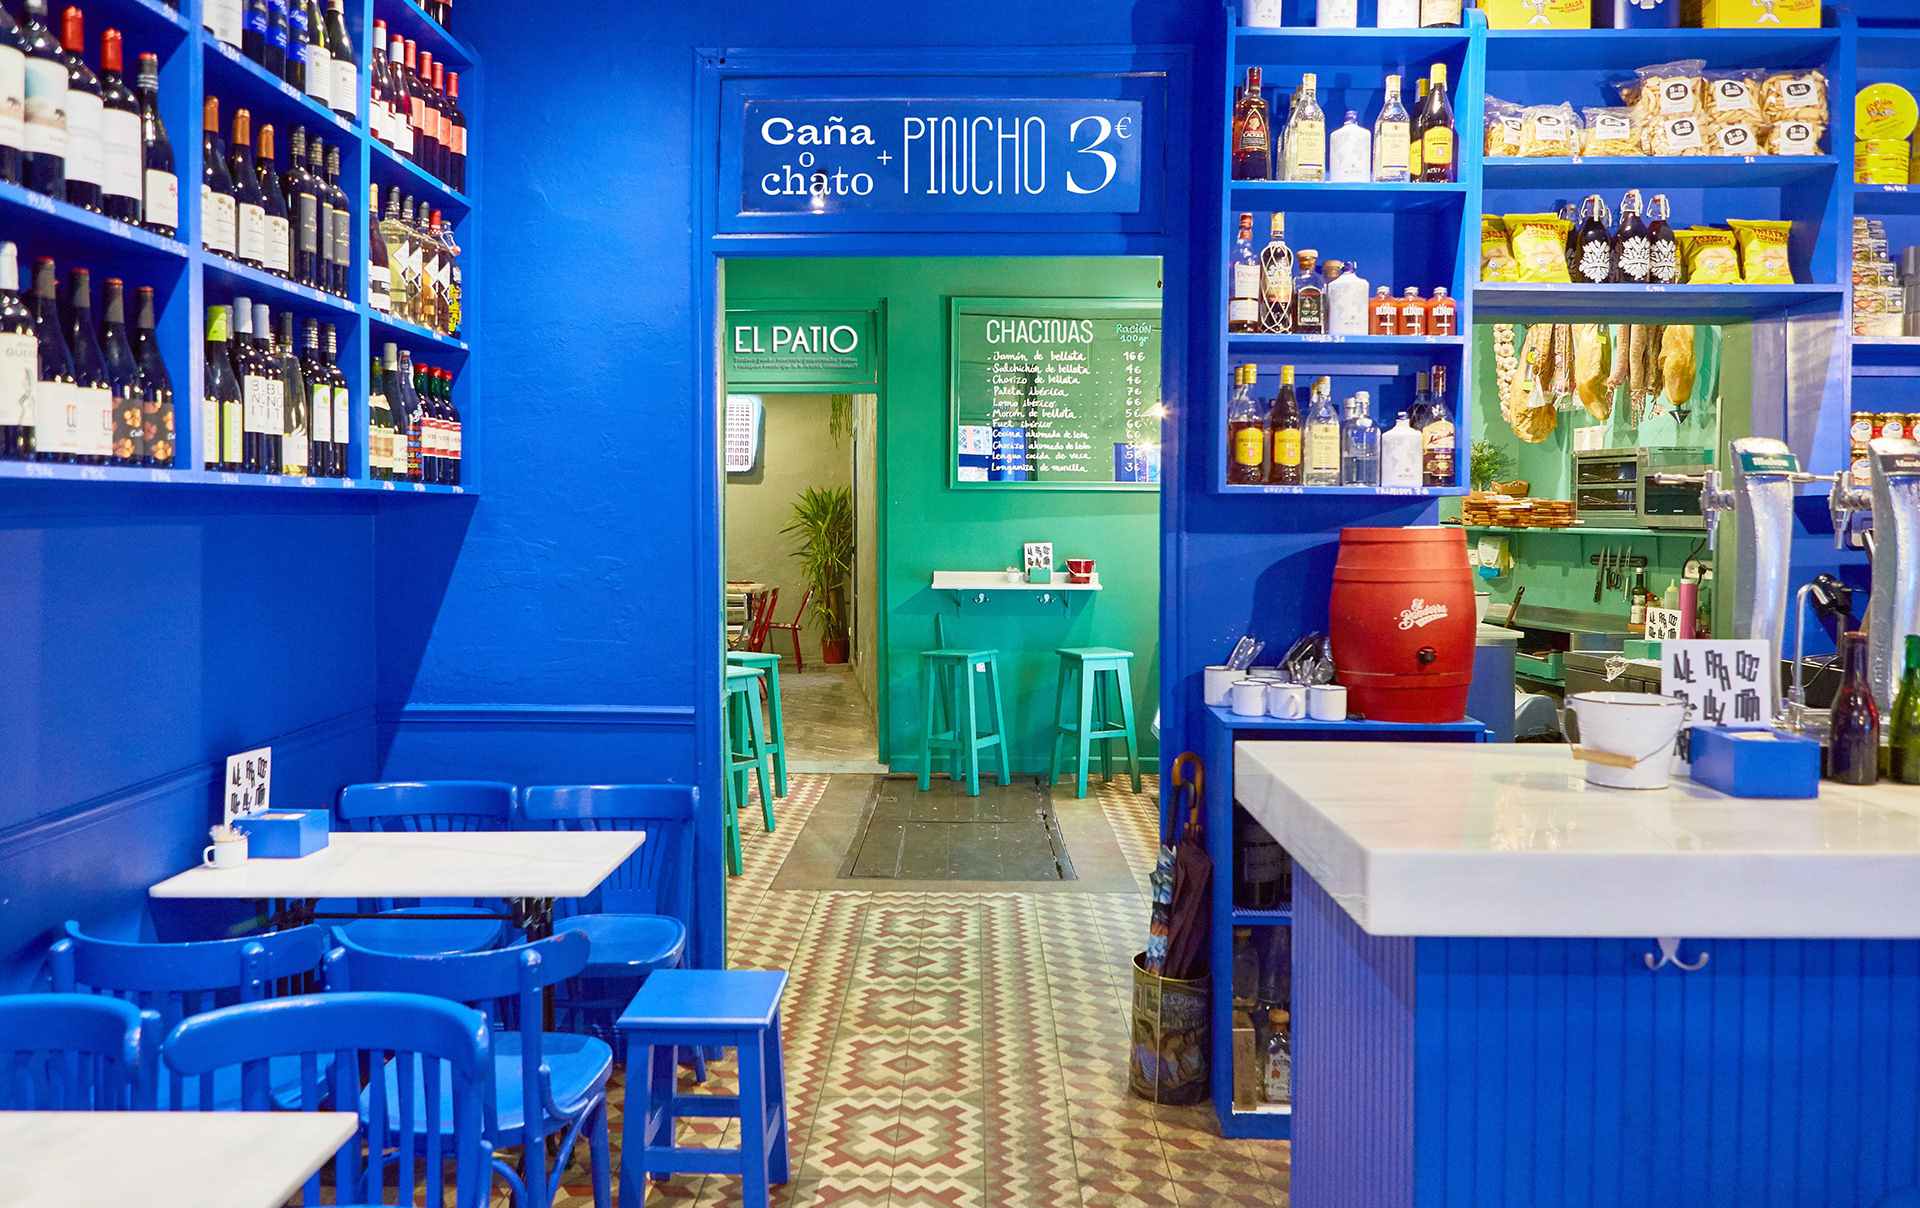 thiết kế nội thất nhà hàng theo phong cách color block